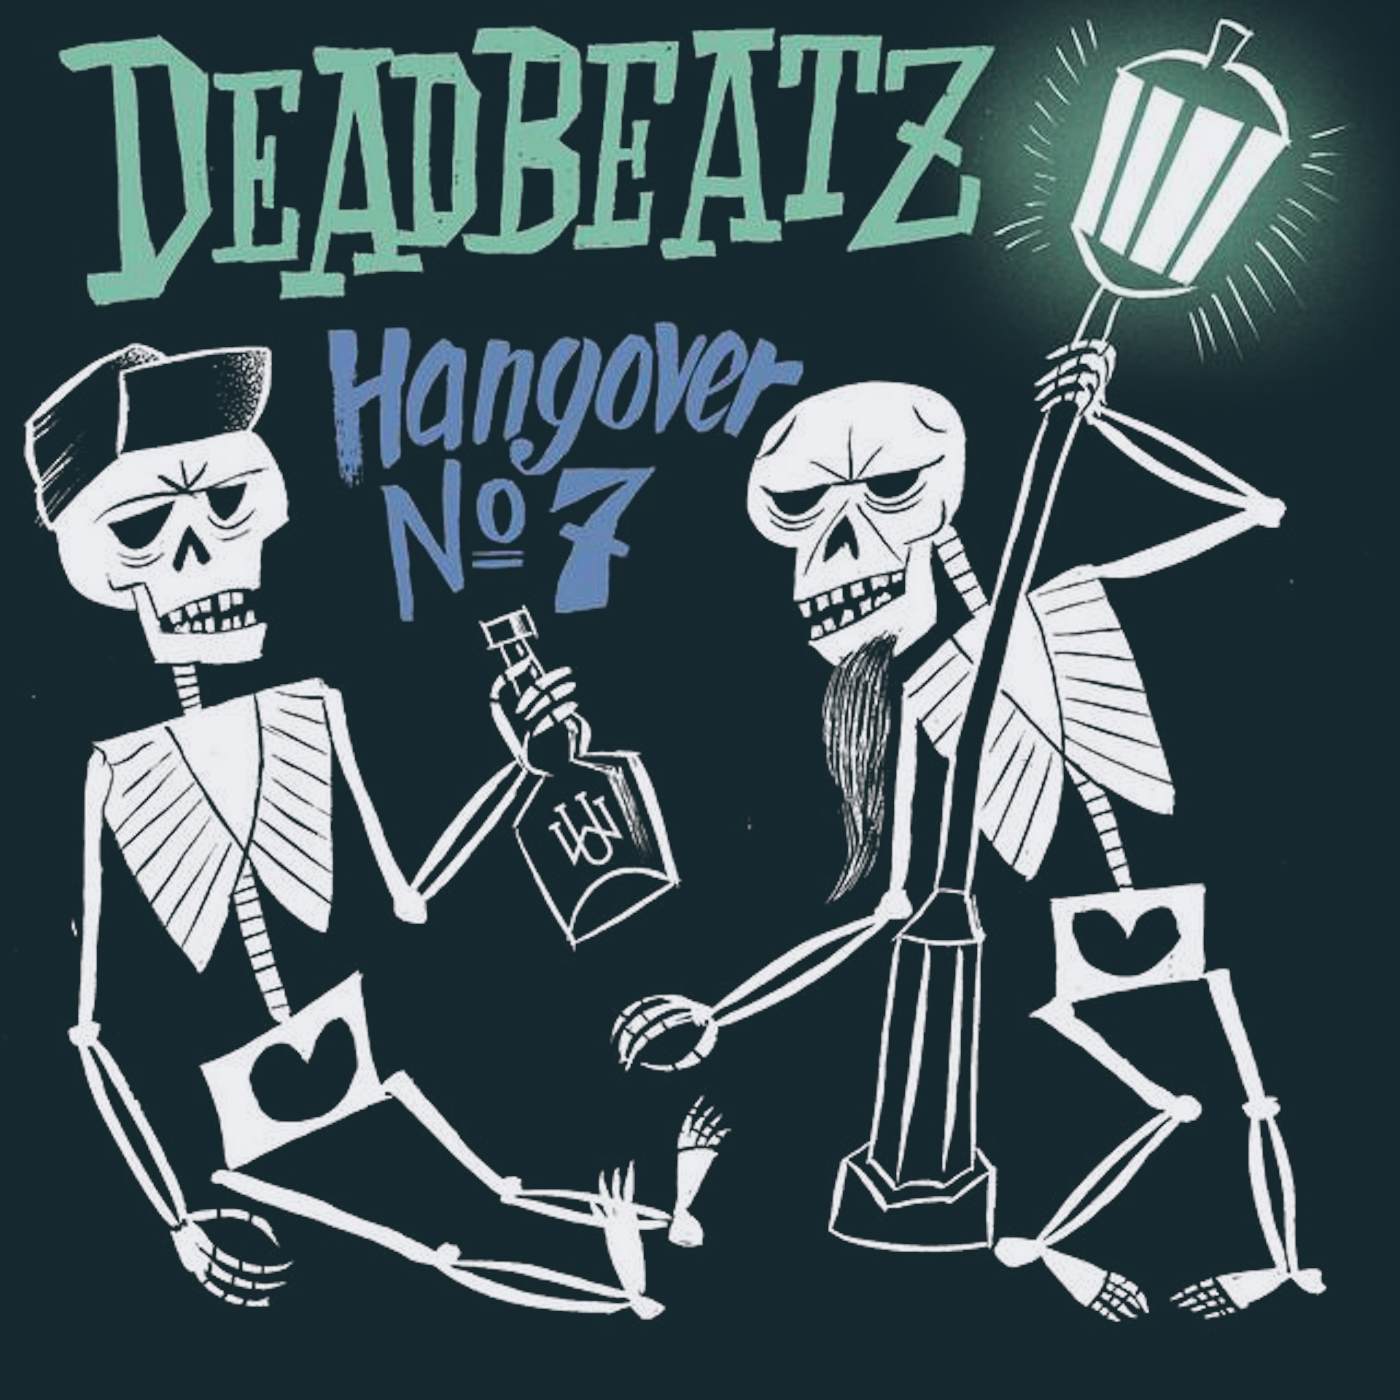 Deadbeatz